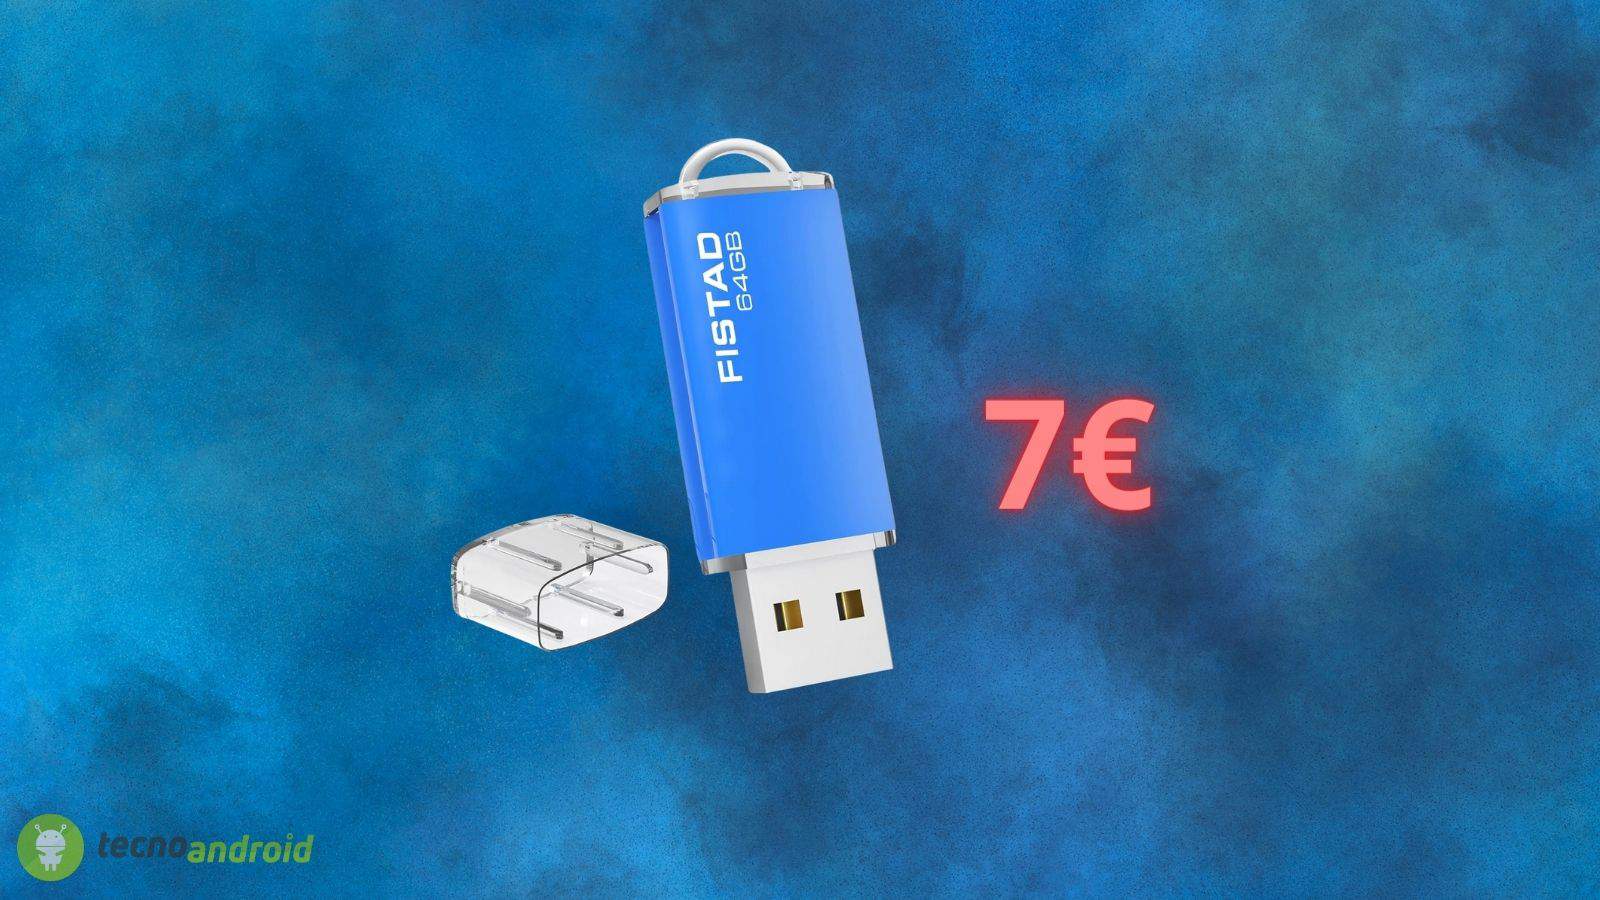 Chiavetta USB 2.0 a soli 7 euro: uno SCONTO INCREDIBILE oggi